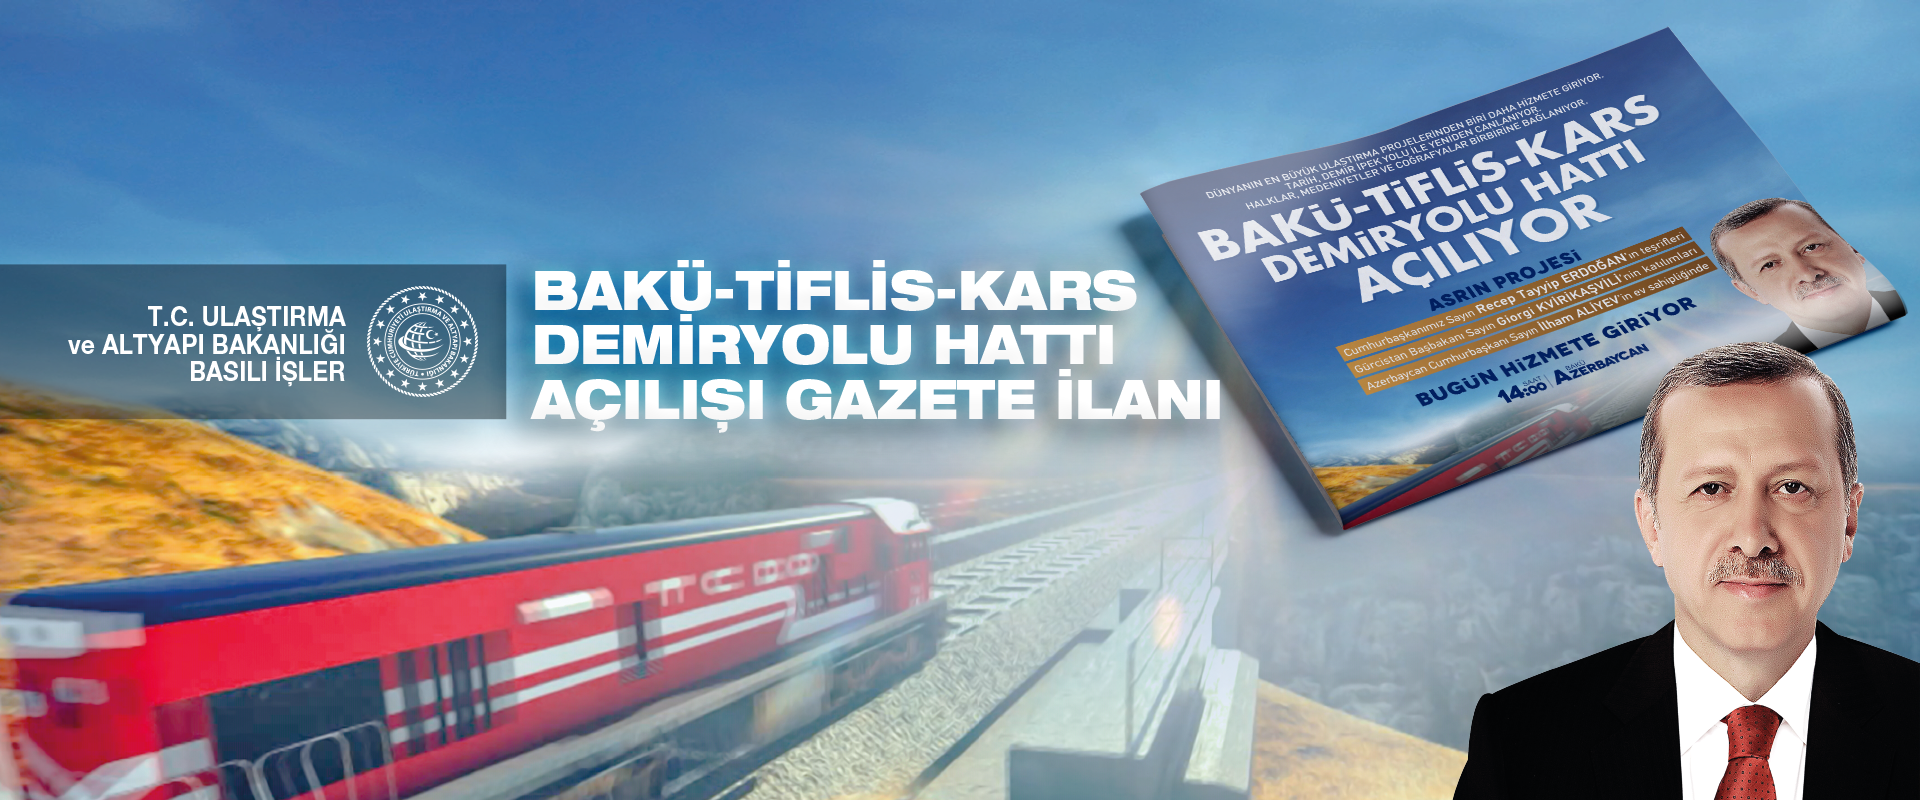 Bakü-Tiflis-Kars Demiryolu Açılışı Gazete İlanı